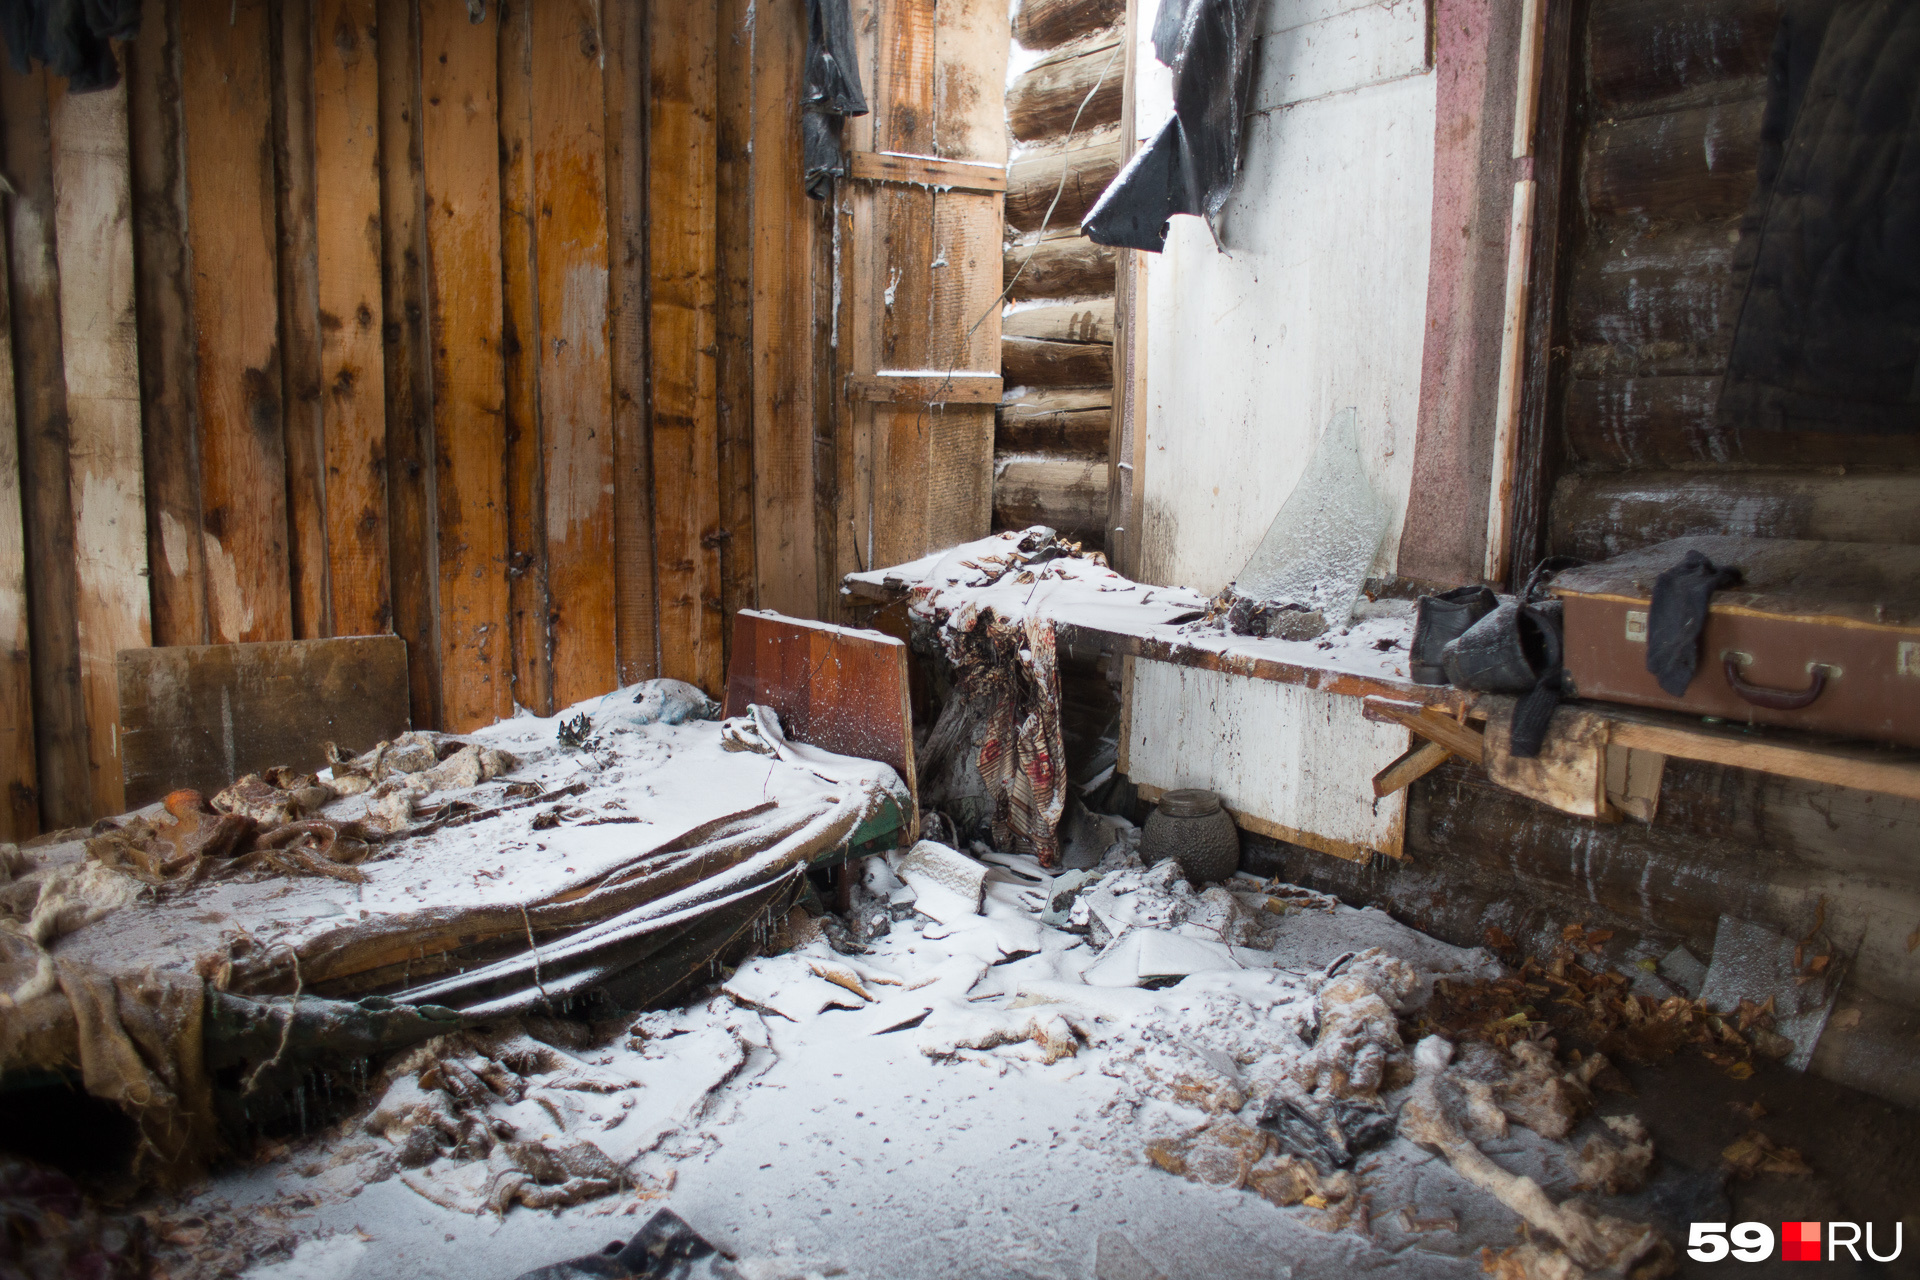 Предметы и мебель покрыты снегом вперемешку со следами пожарной пены. Находиться в доме крайне опасно — набухший потолок в любой момент может обрушиться